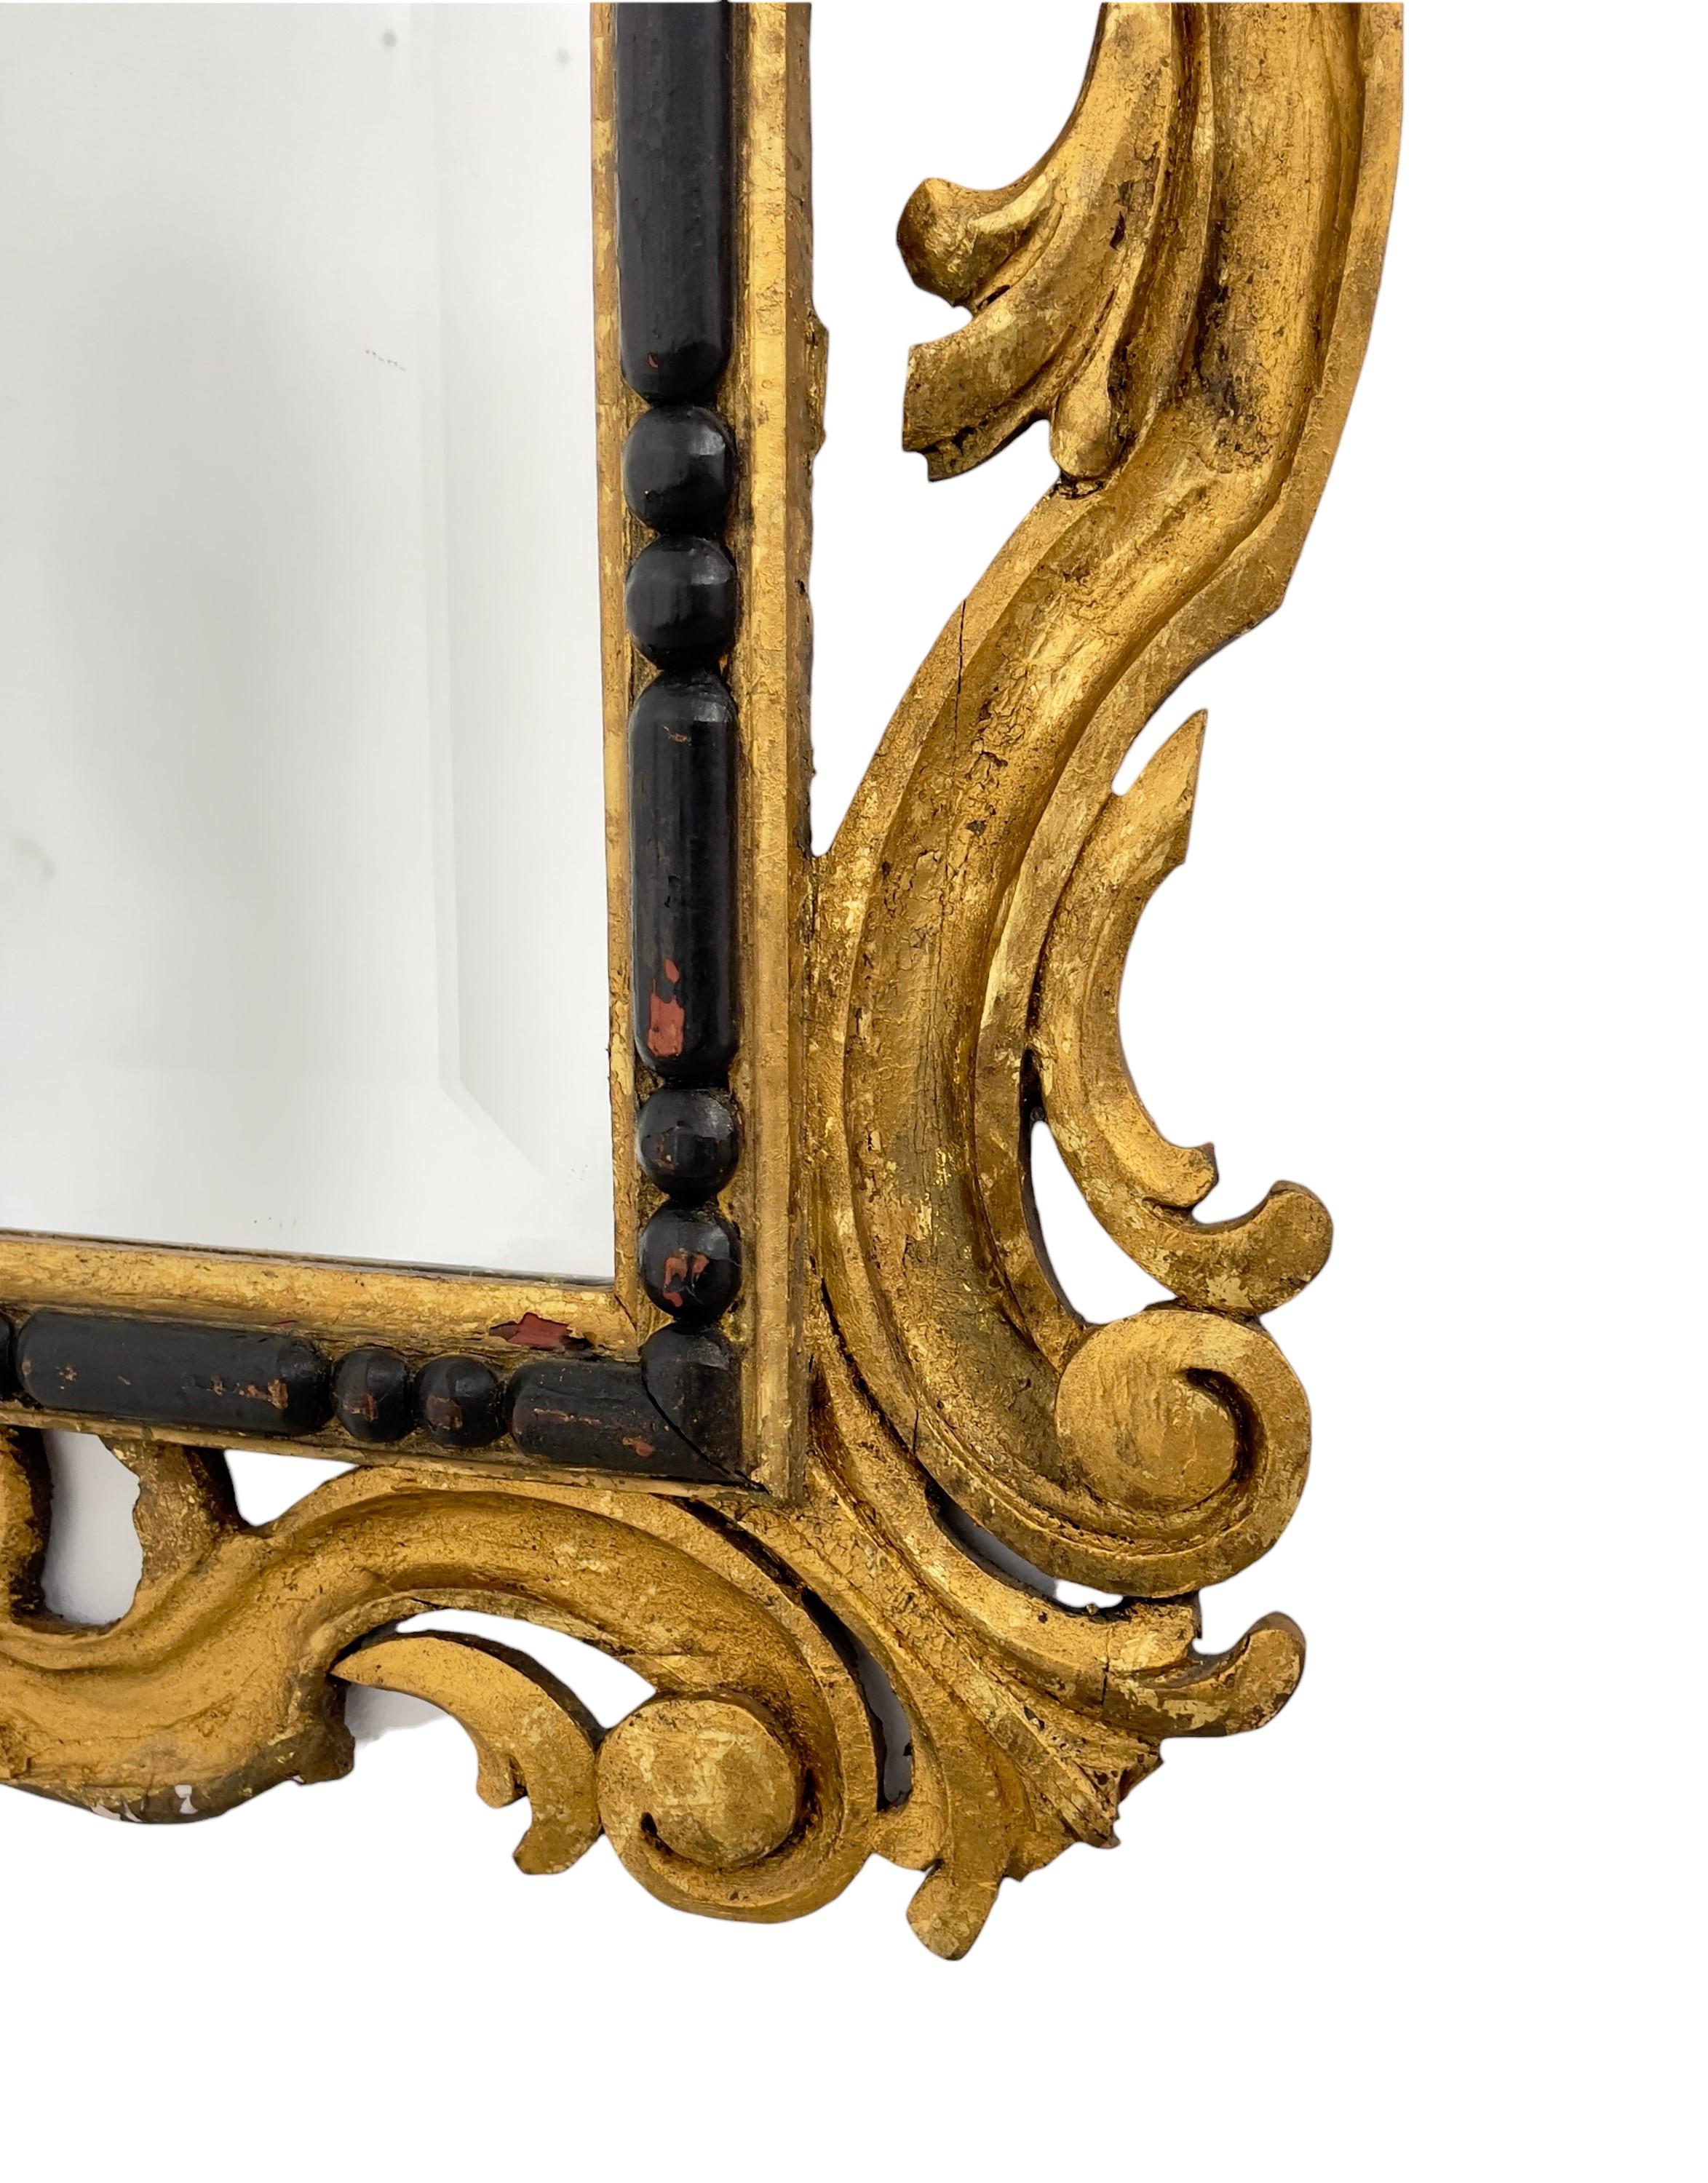 Miroir ancien doré avec cadre en bois et porporin doré. Fabrication italienne. 1700. 